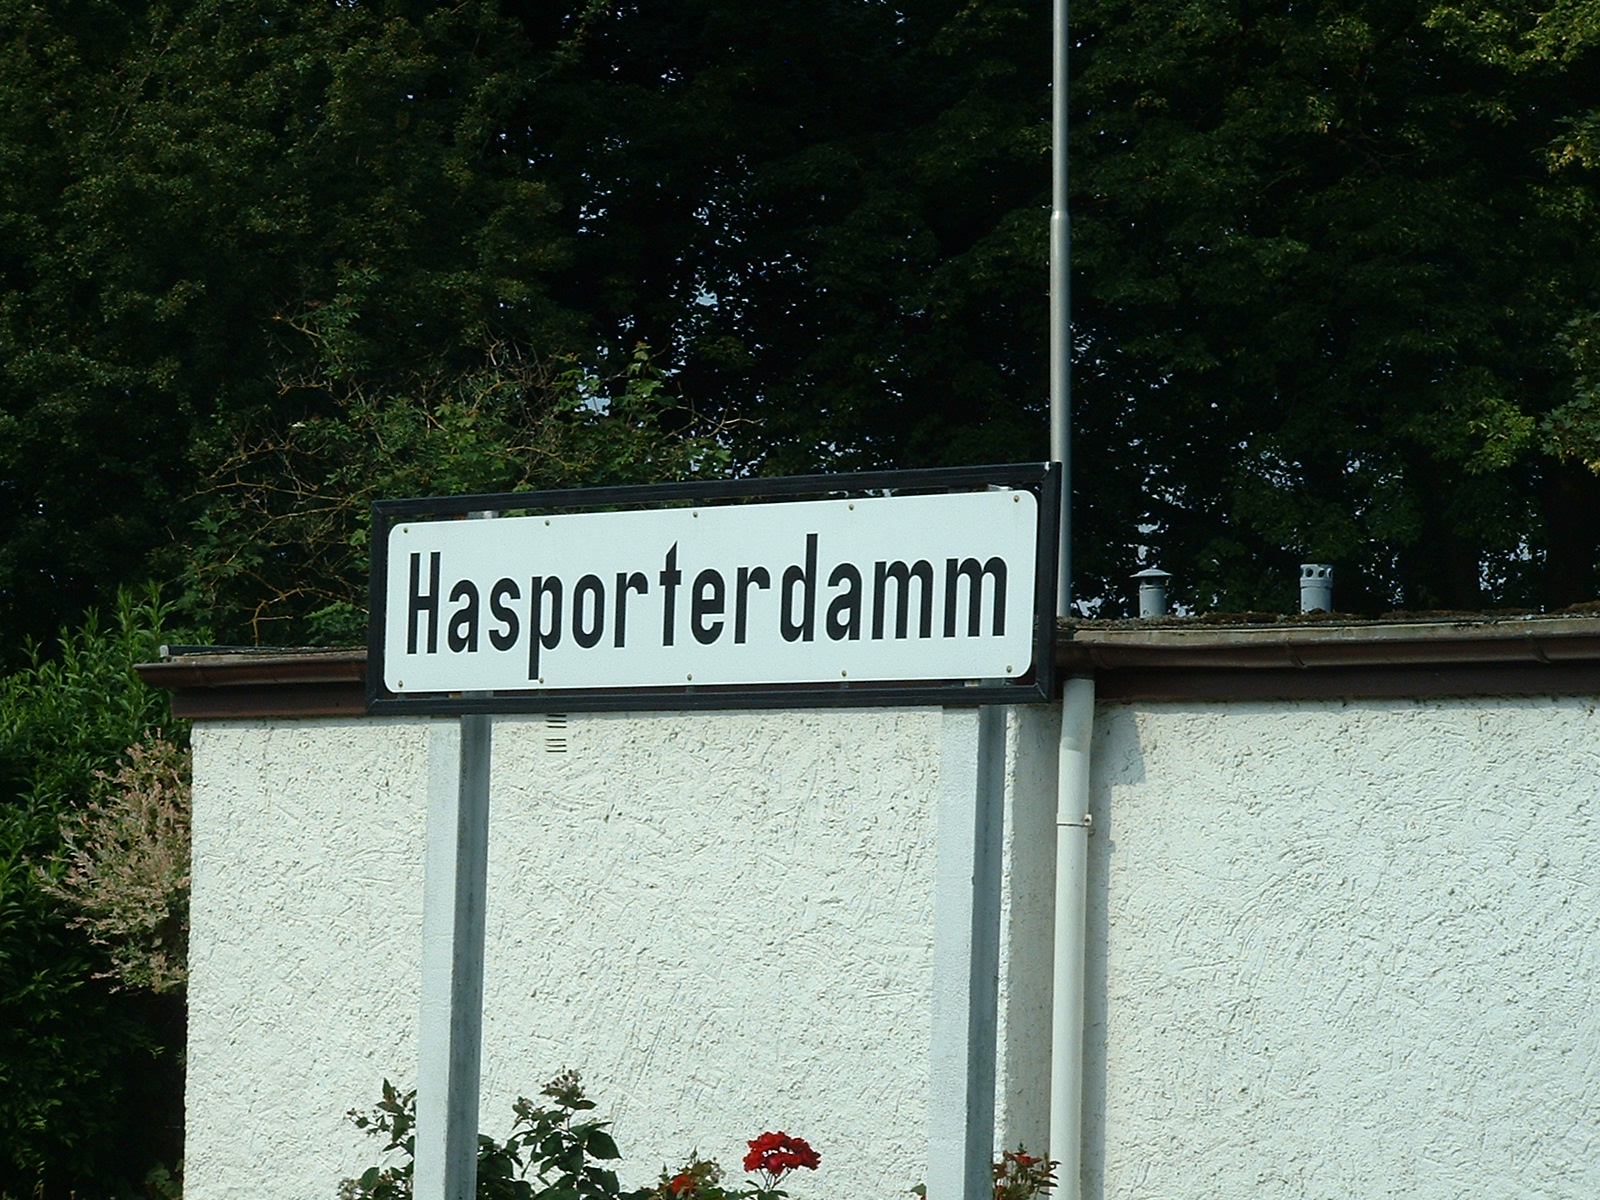 Die Fahrtstrecke von Jan Harpstedt - am Bahnhof Hasporterdamm in Delmenhorst